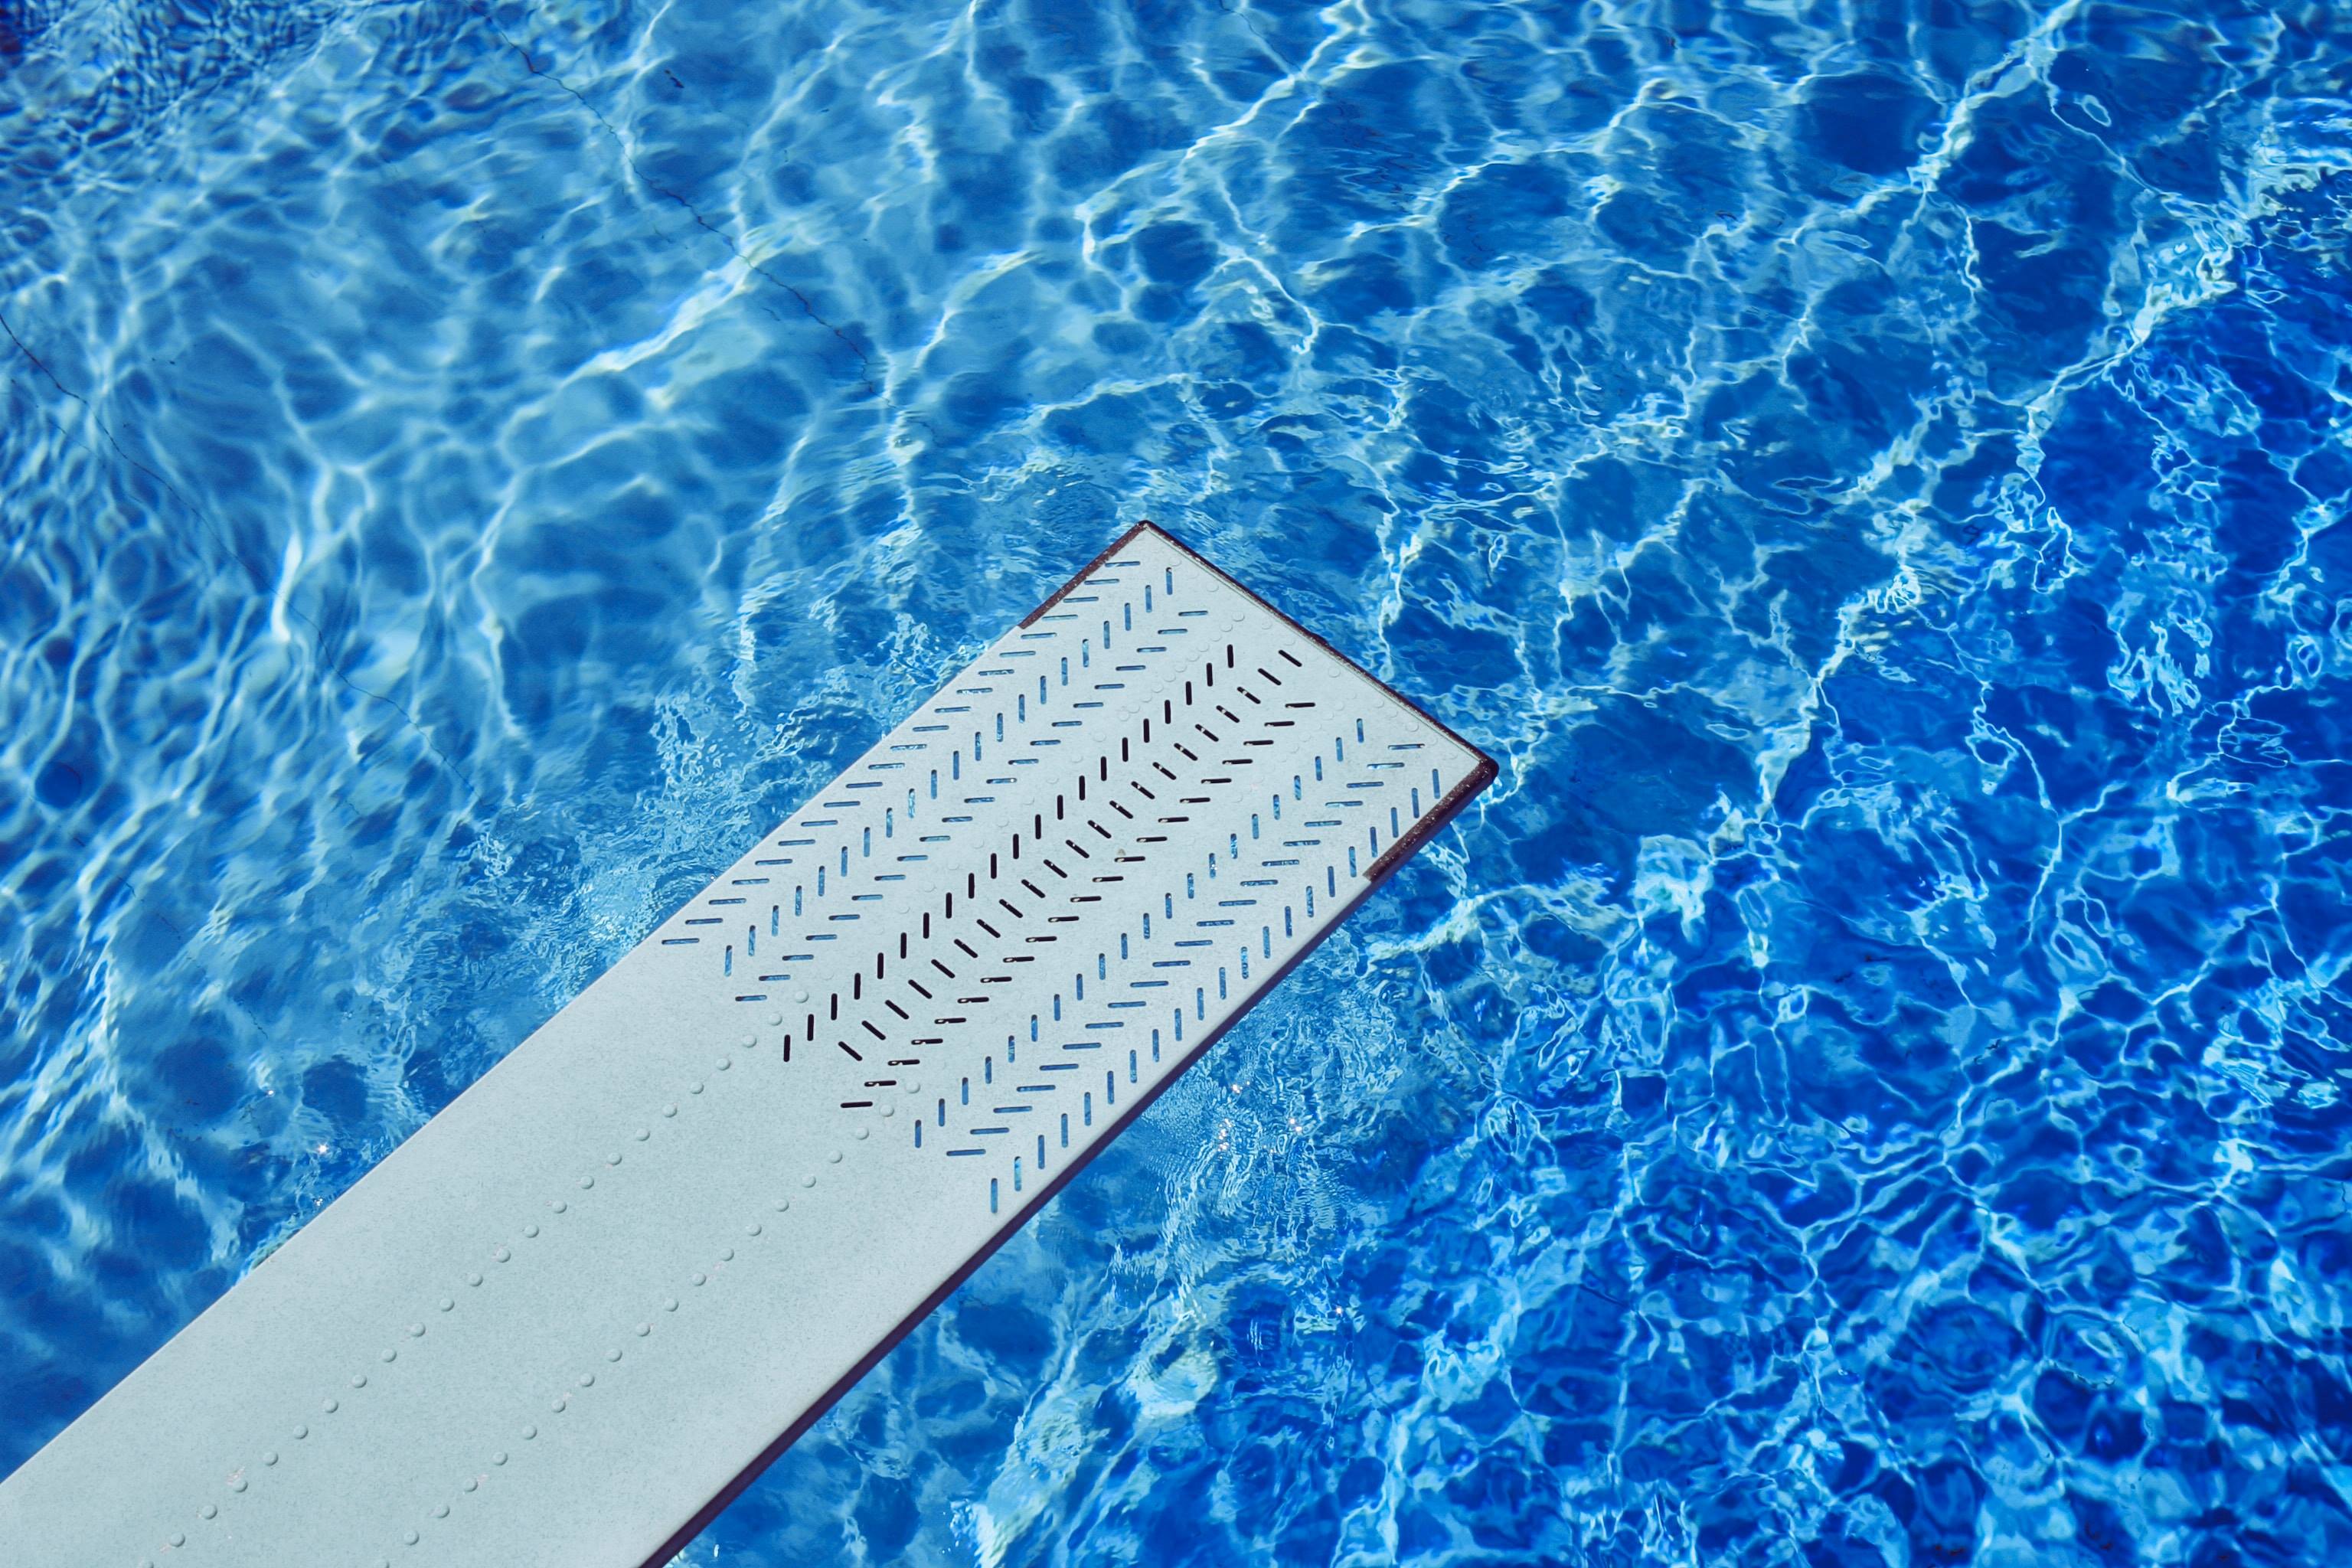 La piscina è un luogo rinfrescante e divertente dove trascorrere il tempo durante le calde giornate estive. Tuttavia, il contatto prolungato con l'acqua clorata può avere effetti negativi sugli occhi